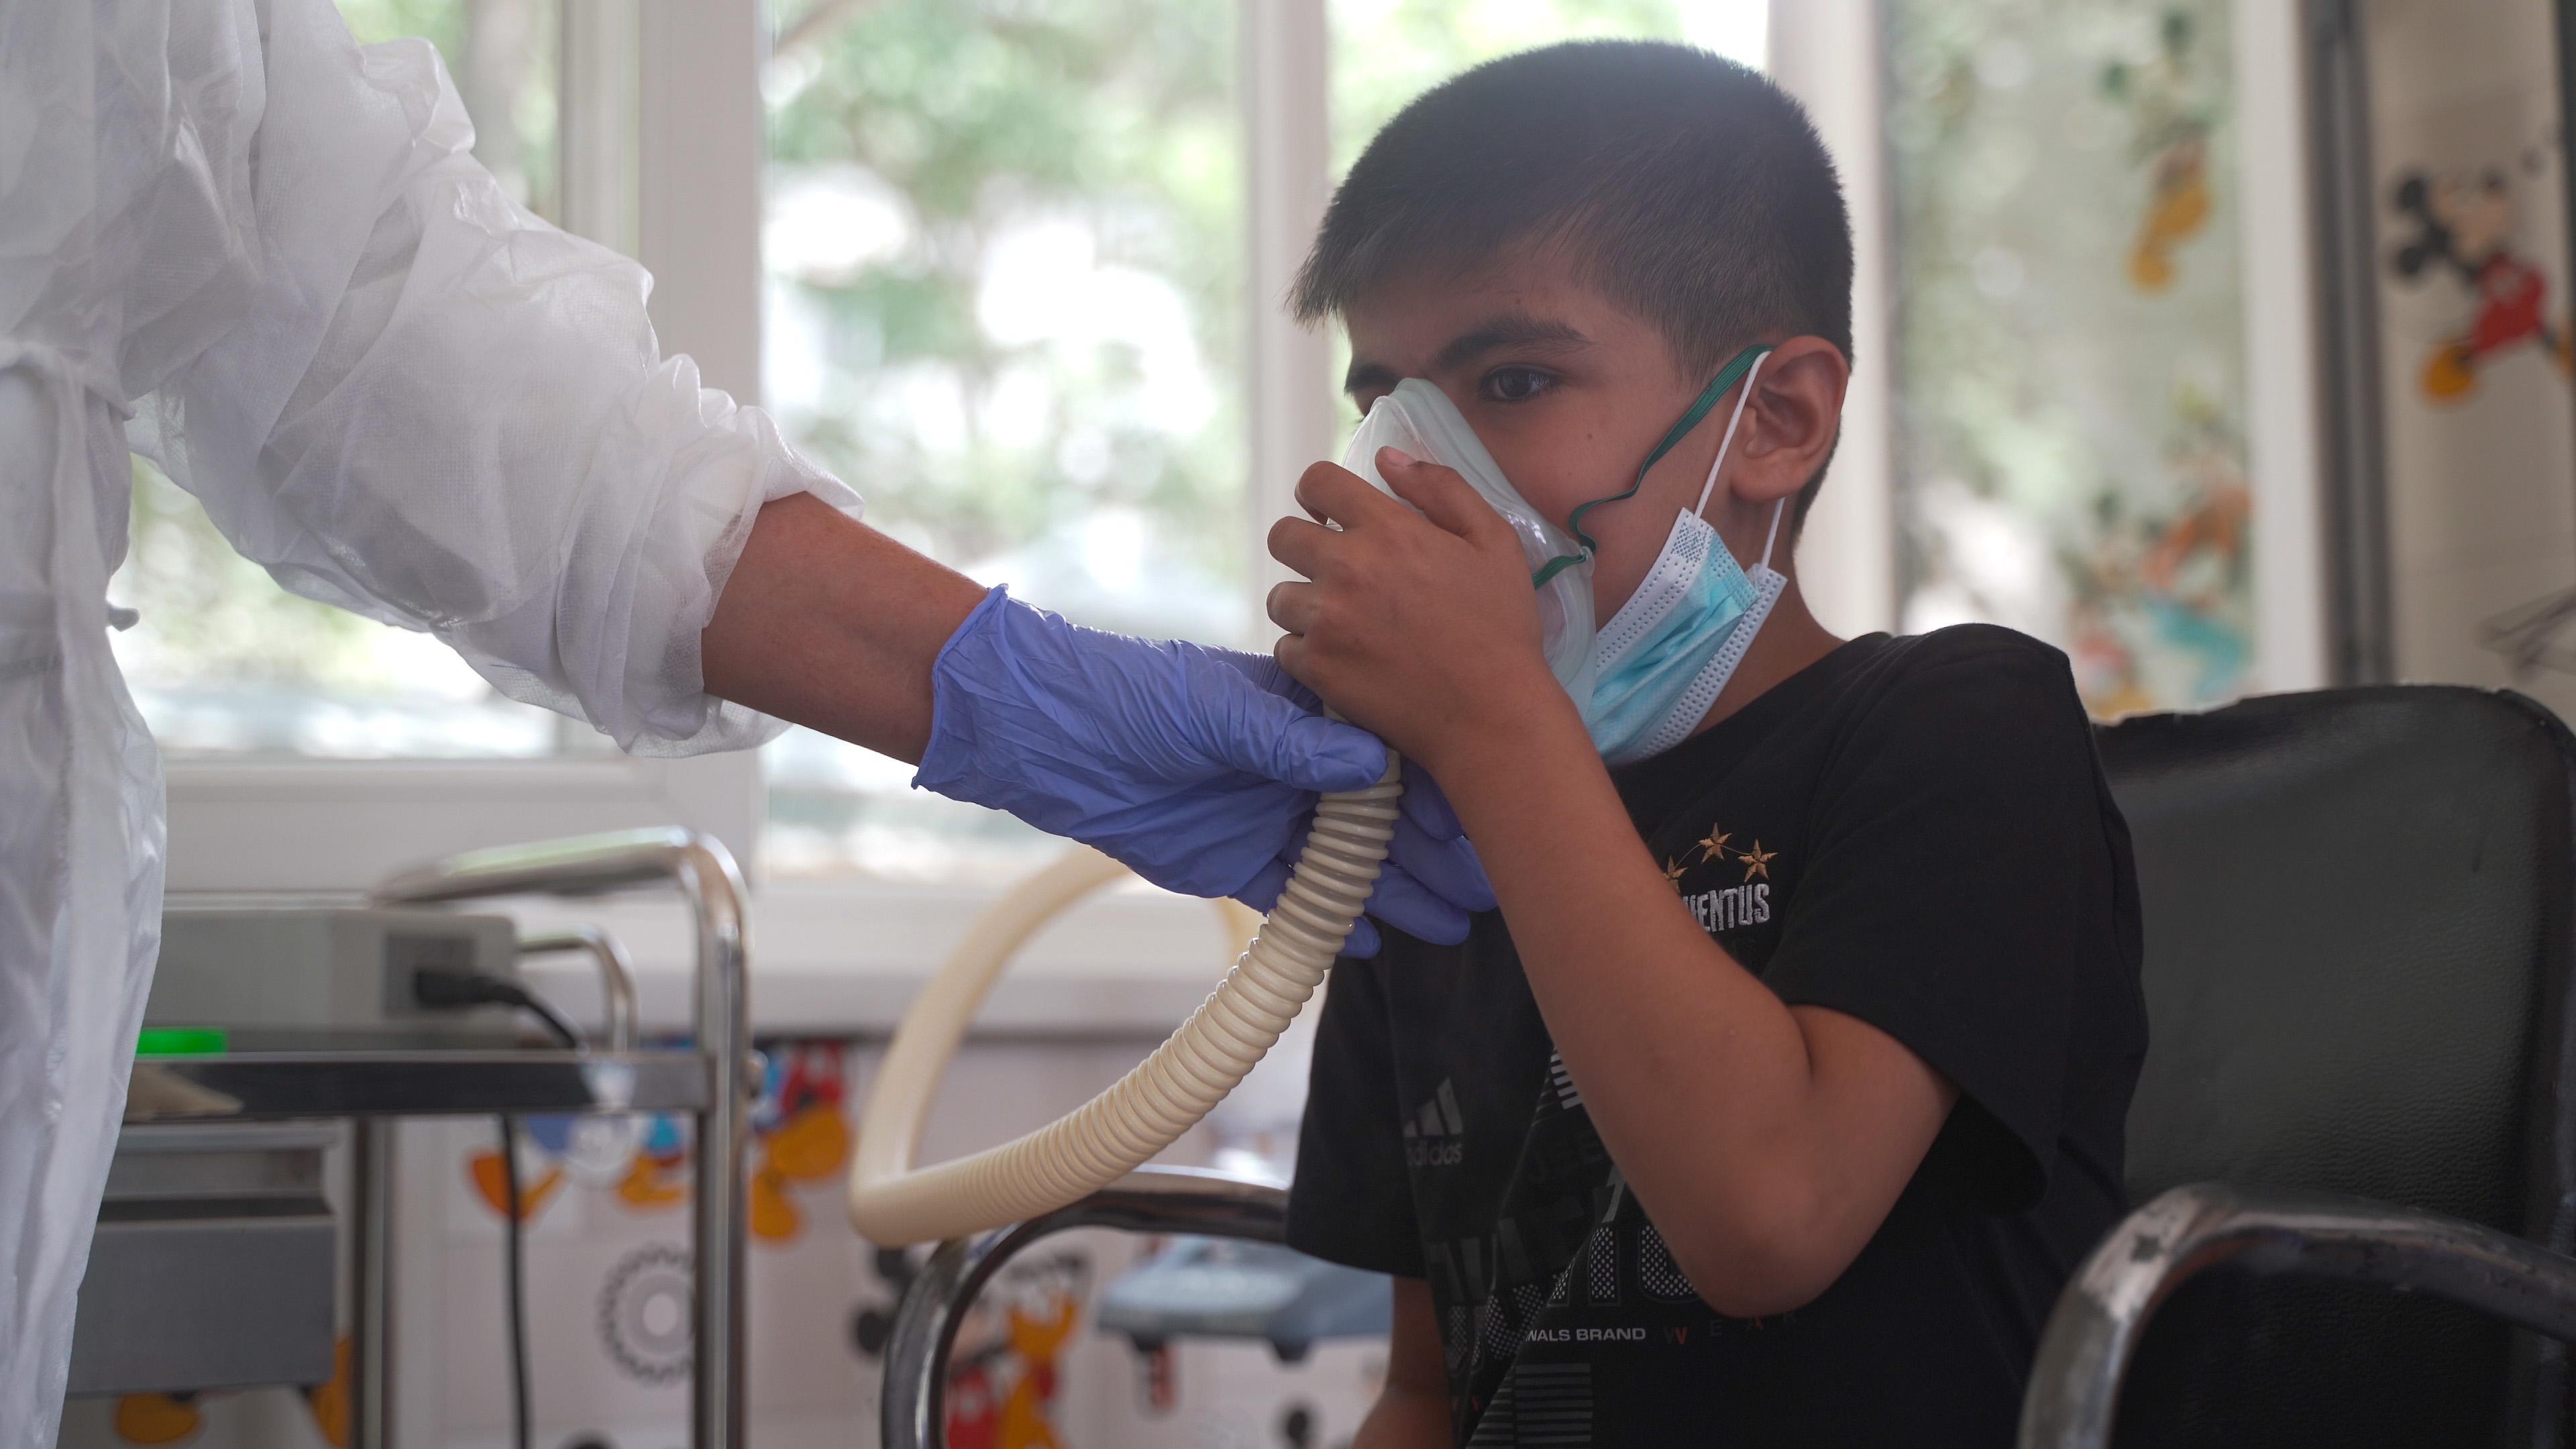 TB diagnosis in Tajikistan